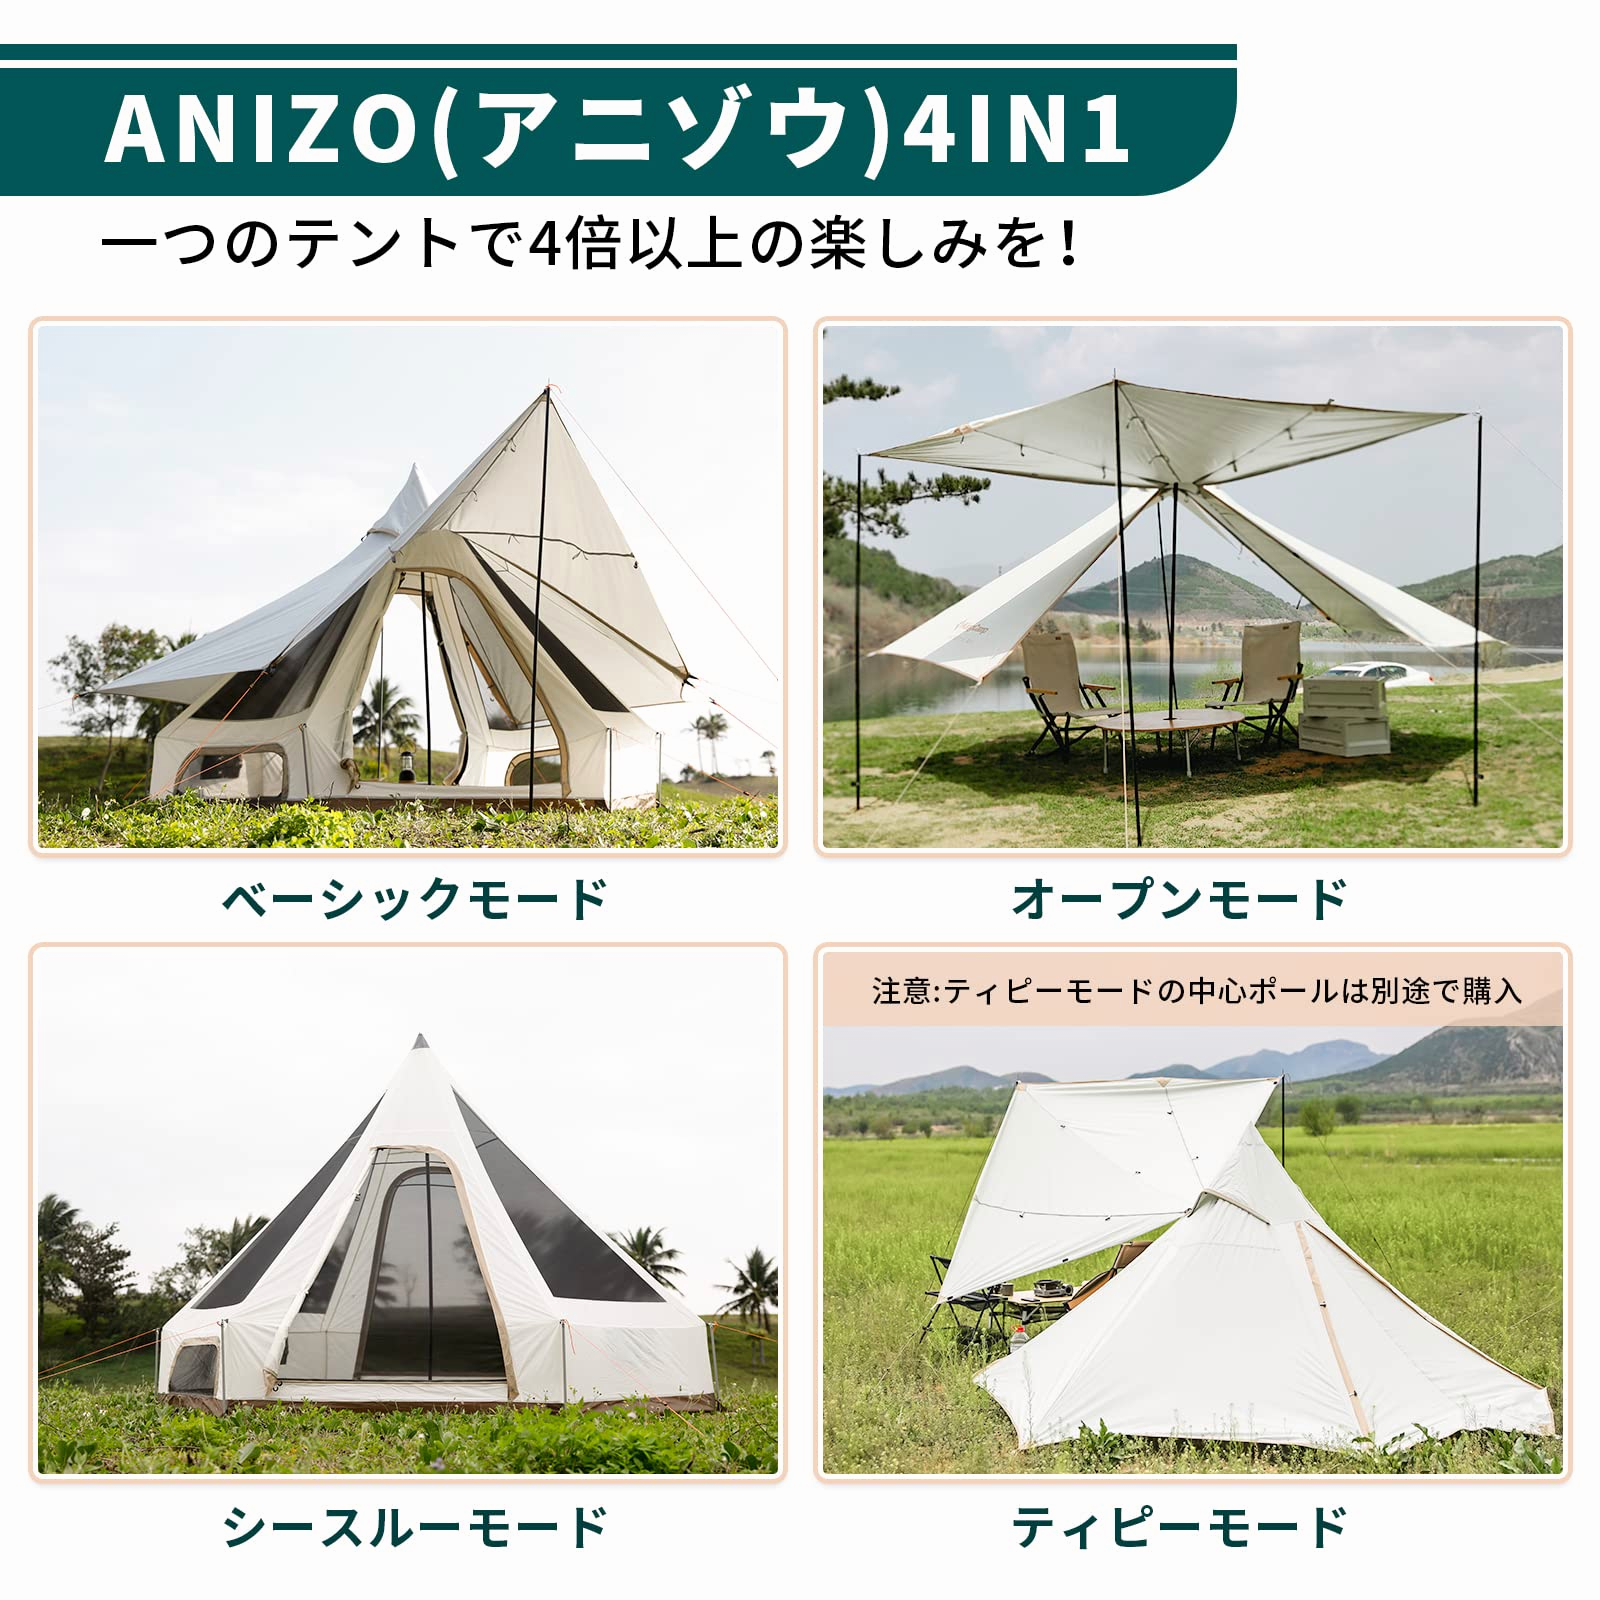 ANIZO（アニゾウ）S 320 KT2210